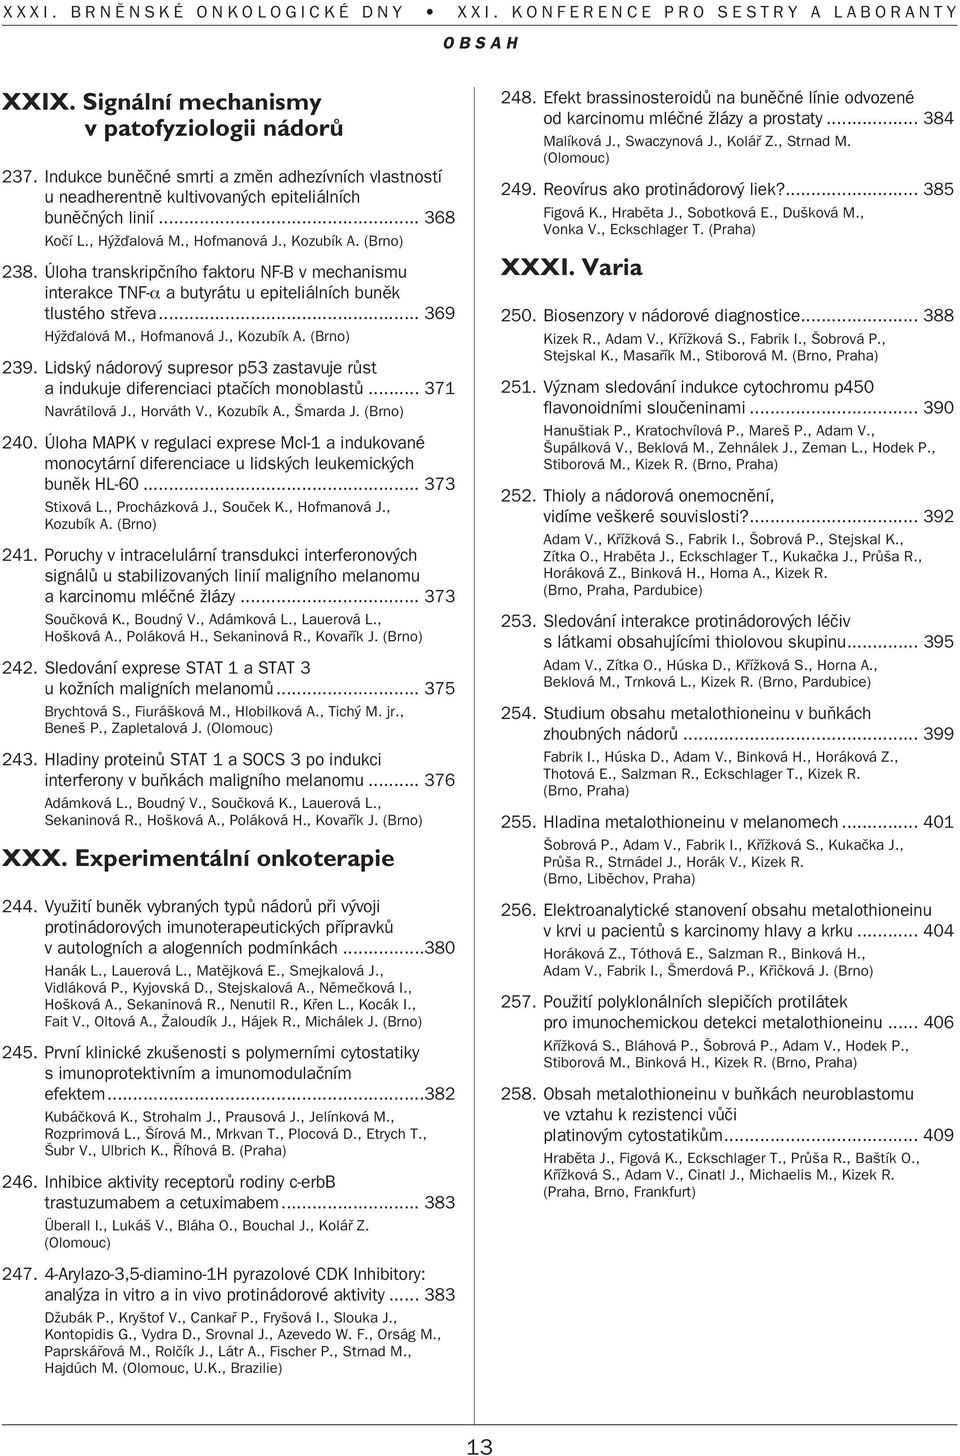 Lidsk nádorov supresor p53 zastavuje rûst a indukuje diferenciaci ptaãích monoblastû... 371 Navrátilová J., Horváth V., Kozubík A., marda J. (Brno) 240.